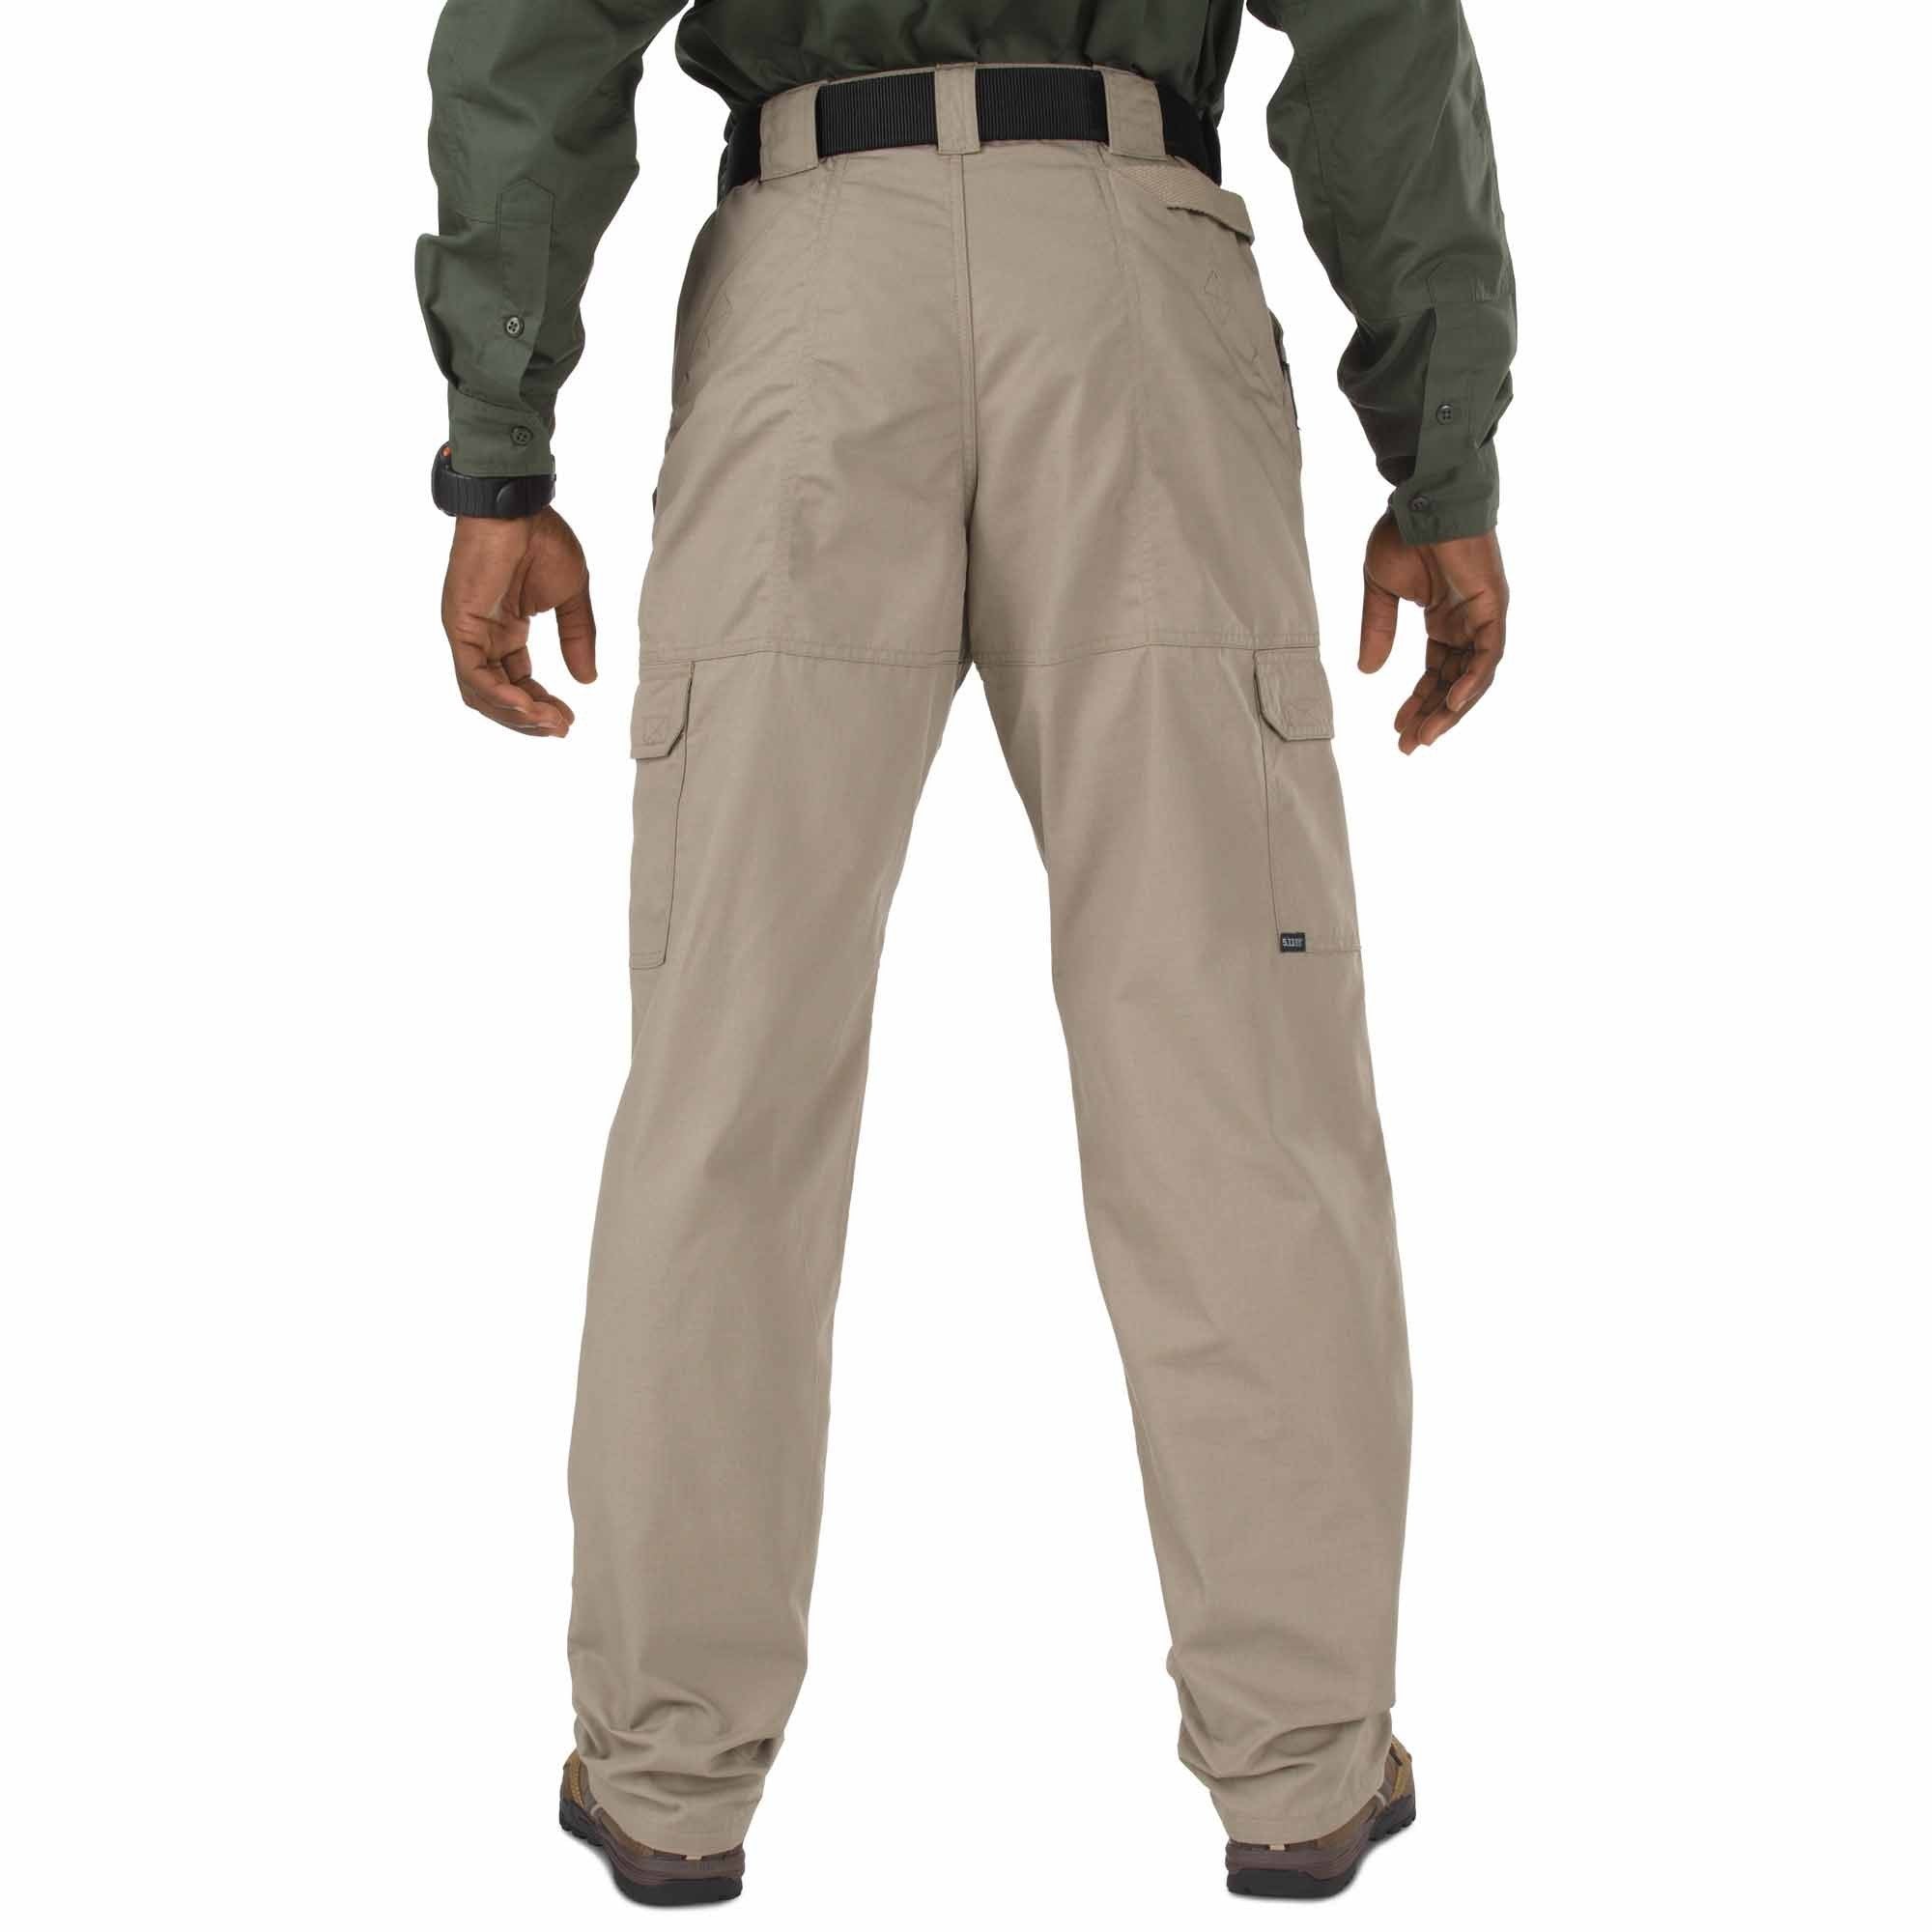 5.11 Tactical Taclite Pro Pants - Stone Pants 5.11 Tactical Tactical Gear Supplier Tactical Distributors Australia